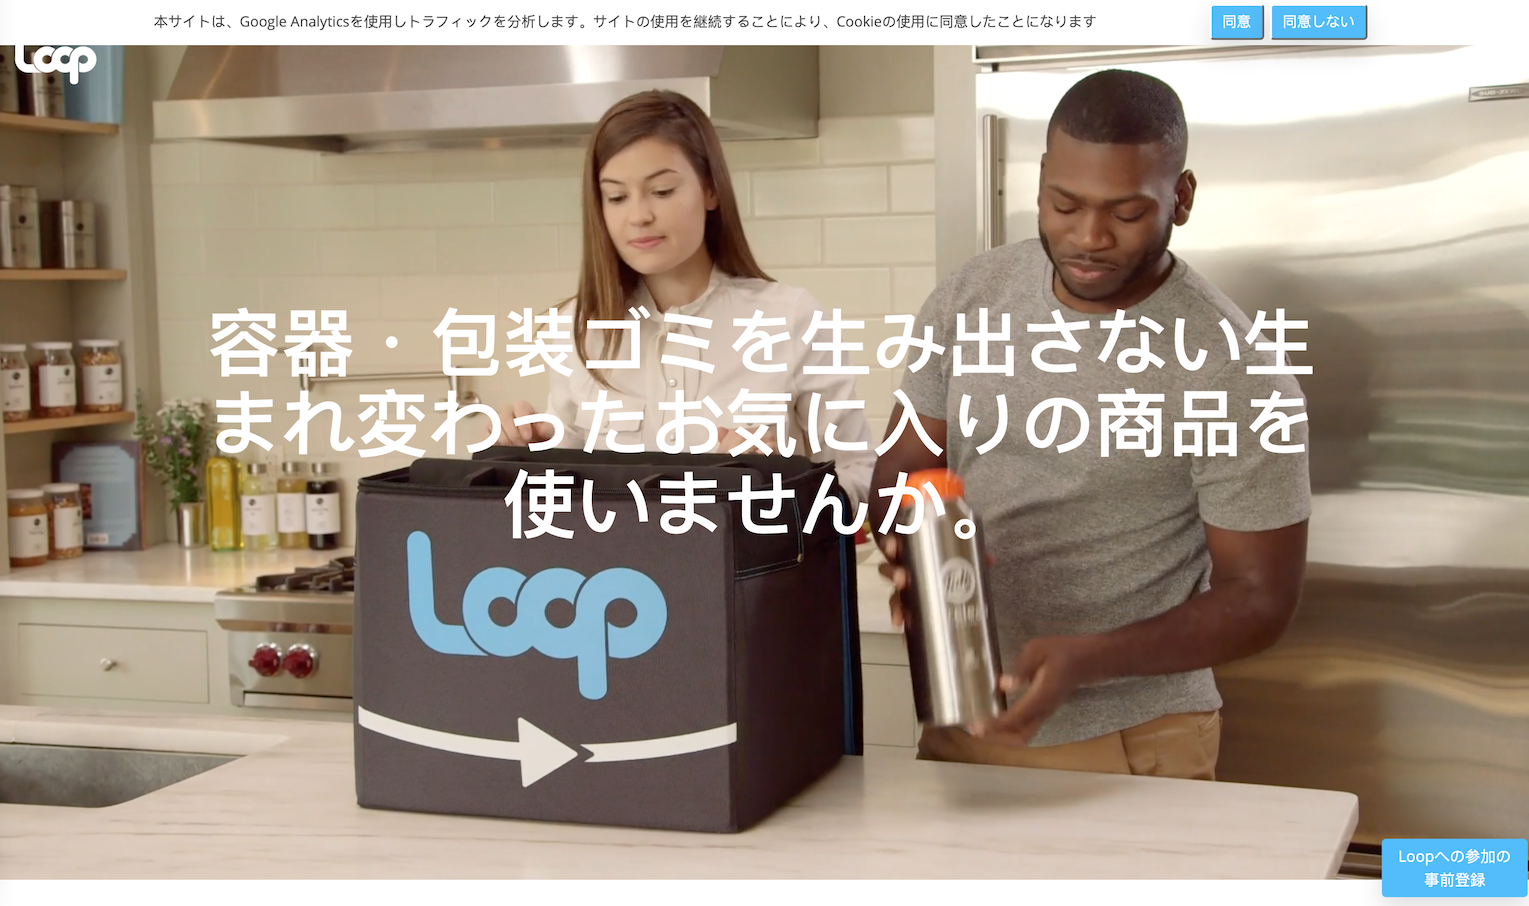 日本伊藤忠投资循环式消费品平台 Loop 日本分公司